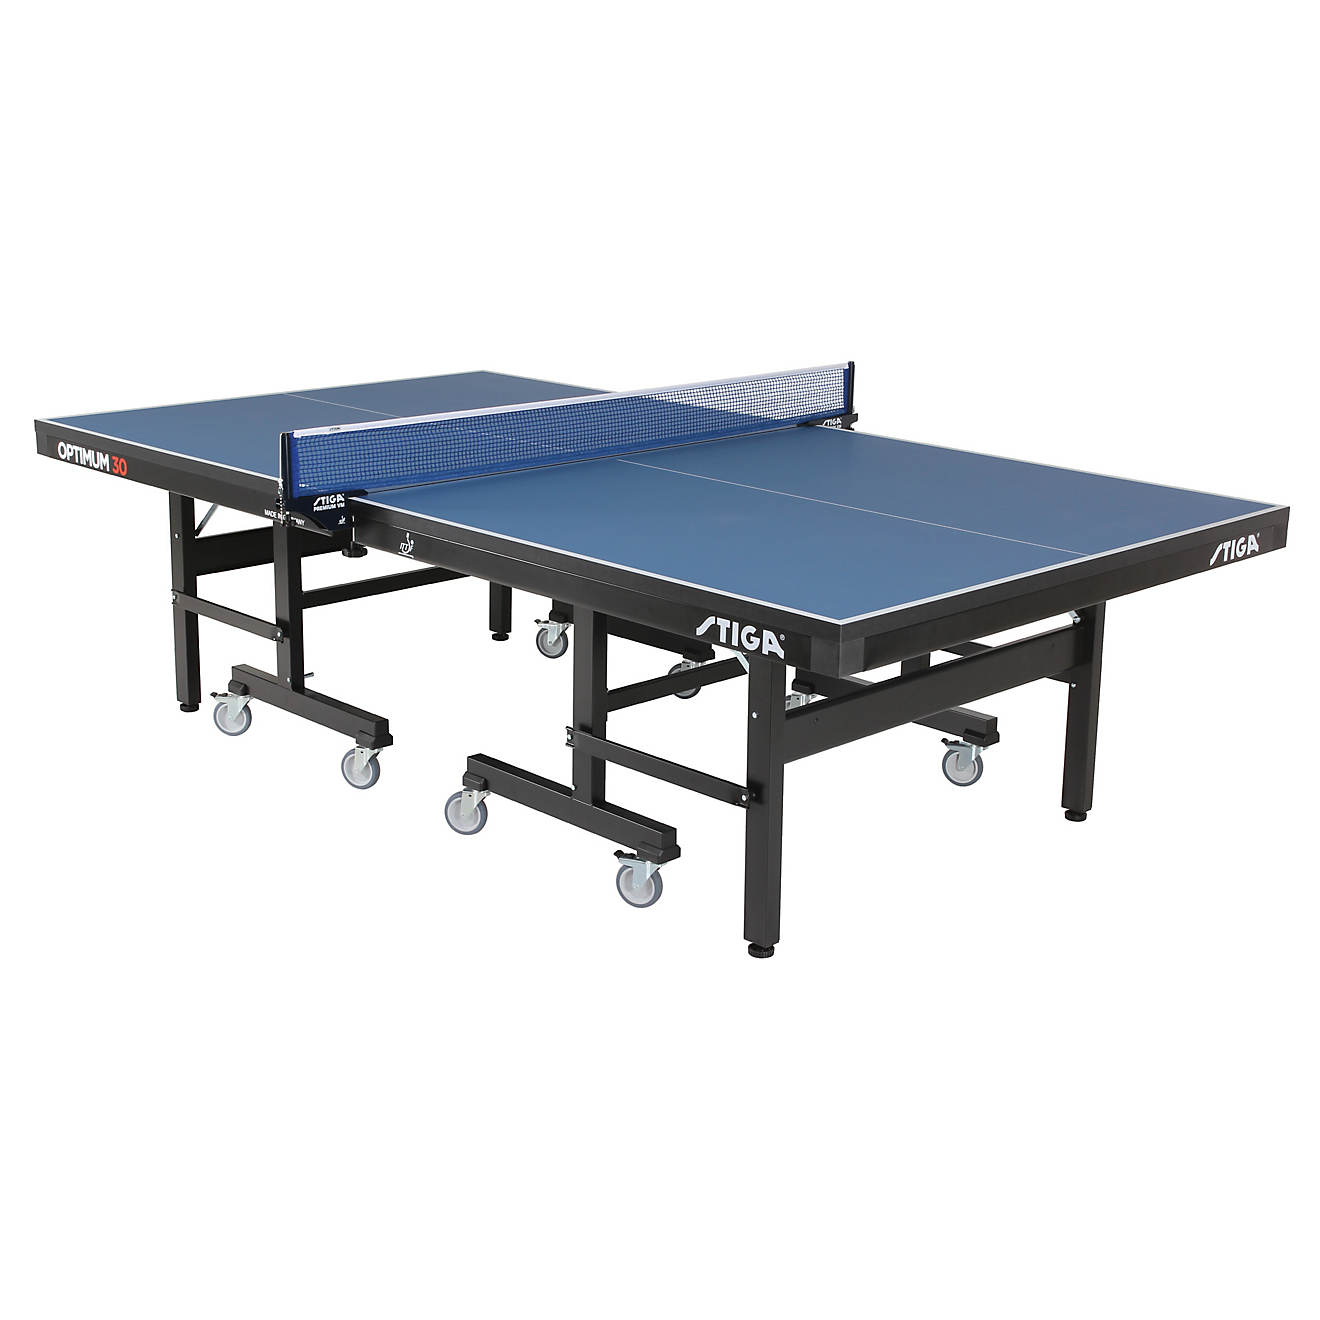 STIGA Optimum 30 Table Tennis Table                                                                                              - view number 1